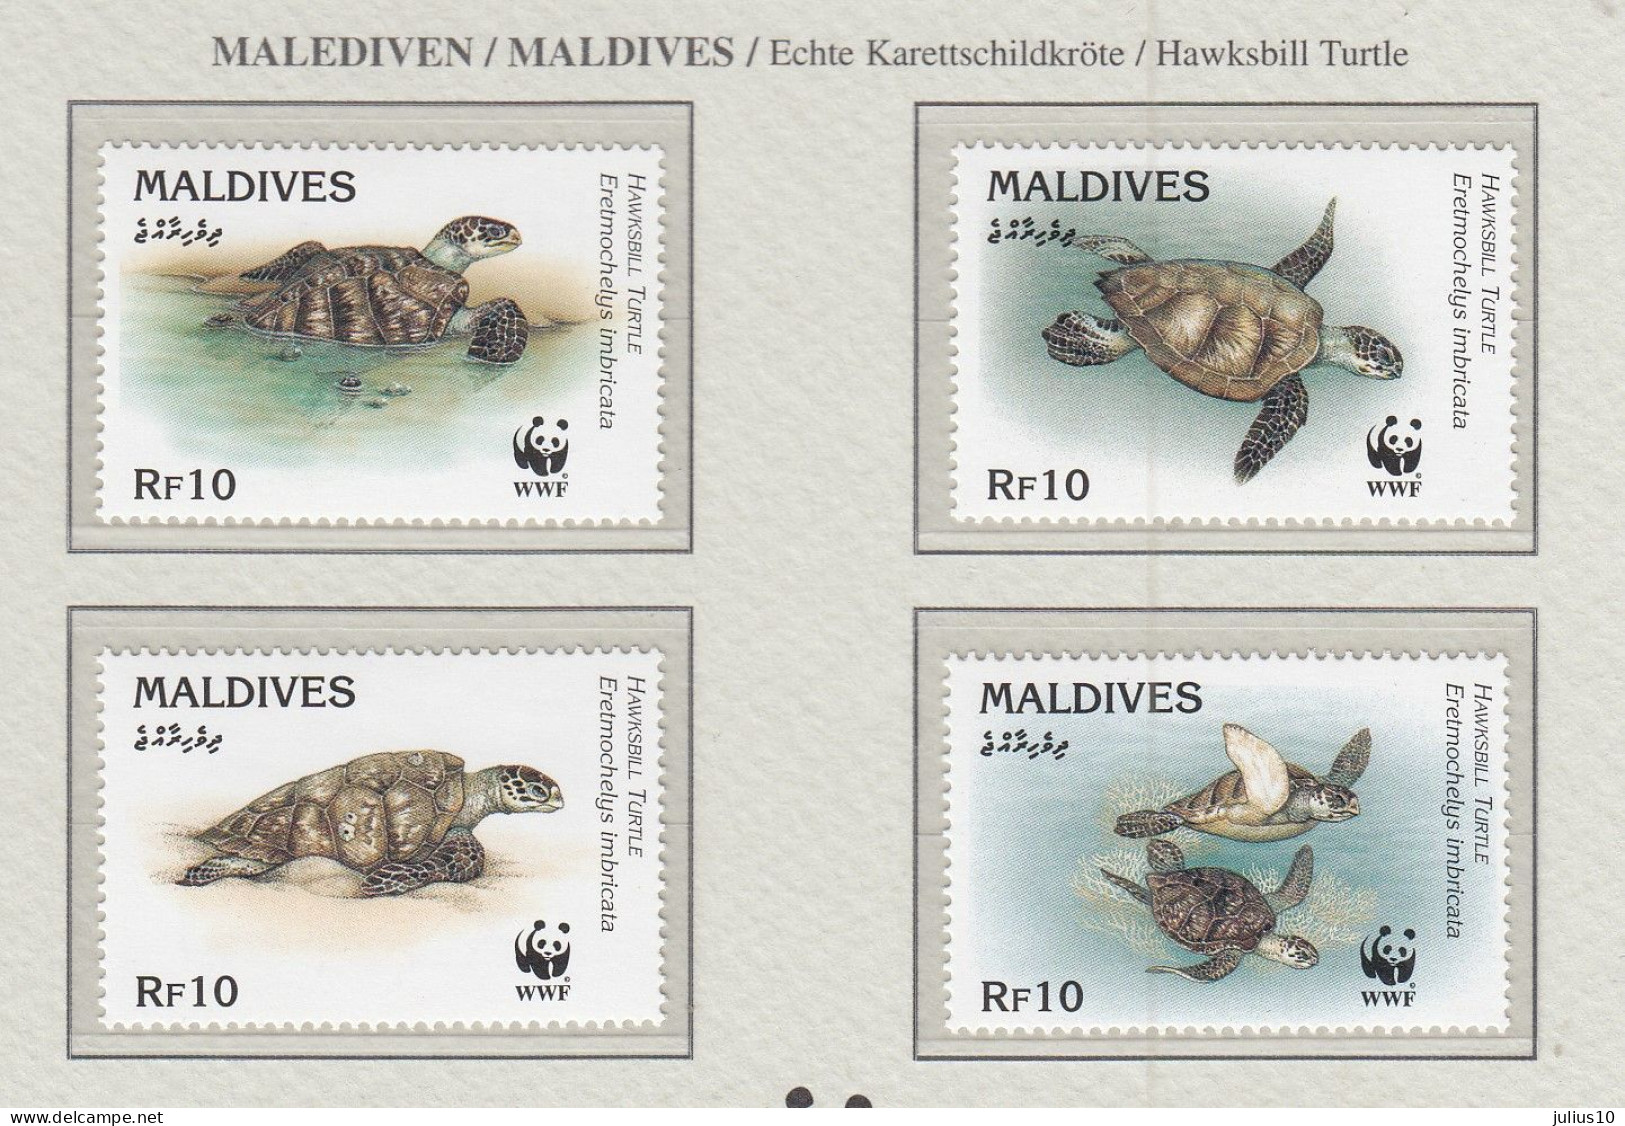 MALDIVES 1995 WWF Turtles Mi 2420-23 MNH(**) Fauna 529 - Schildkröten